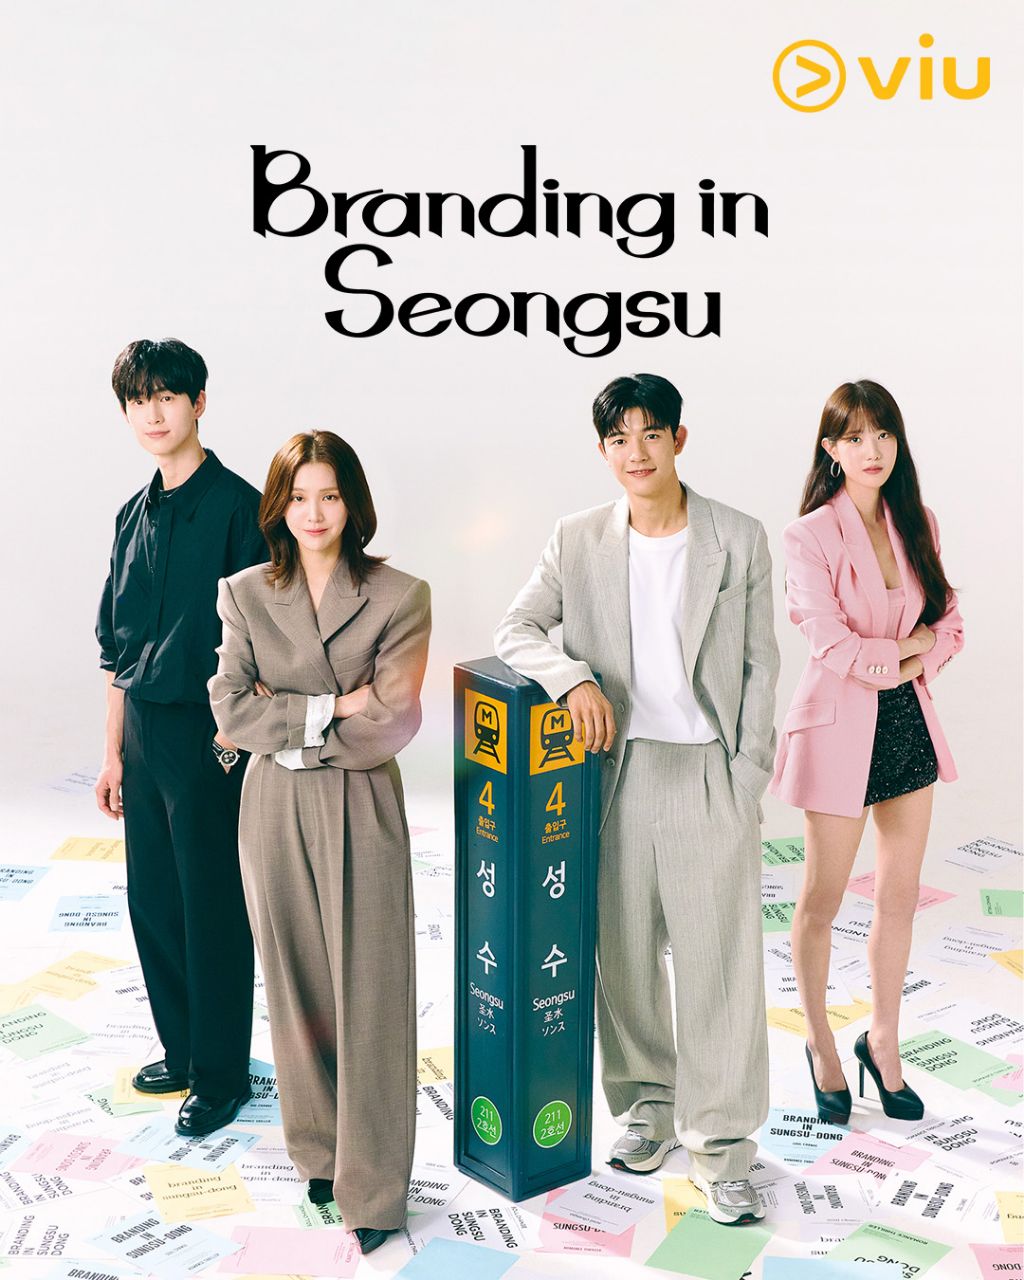 مسلسل العلامة التجارية في سيونغسو Branding in Seongsu الحلقة 22